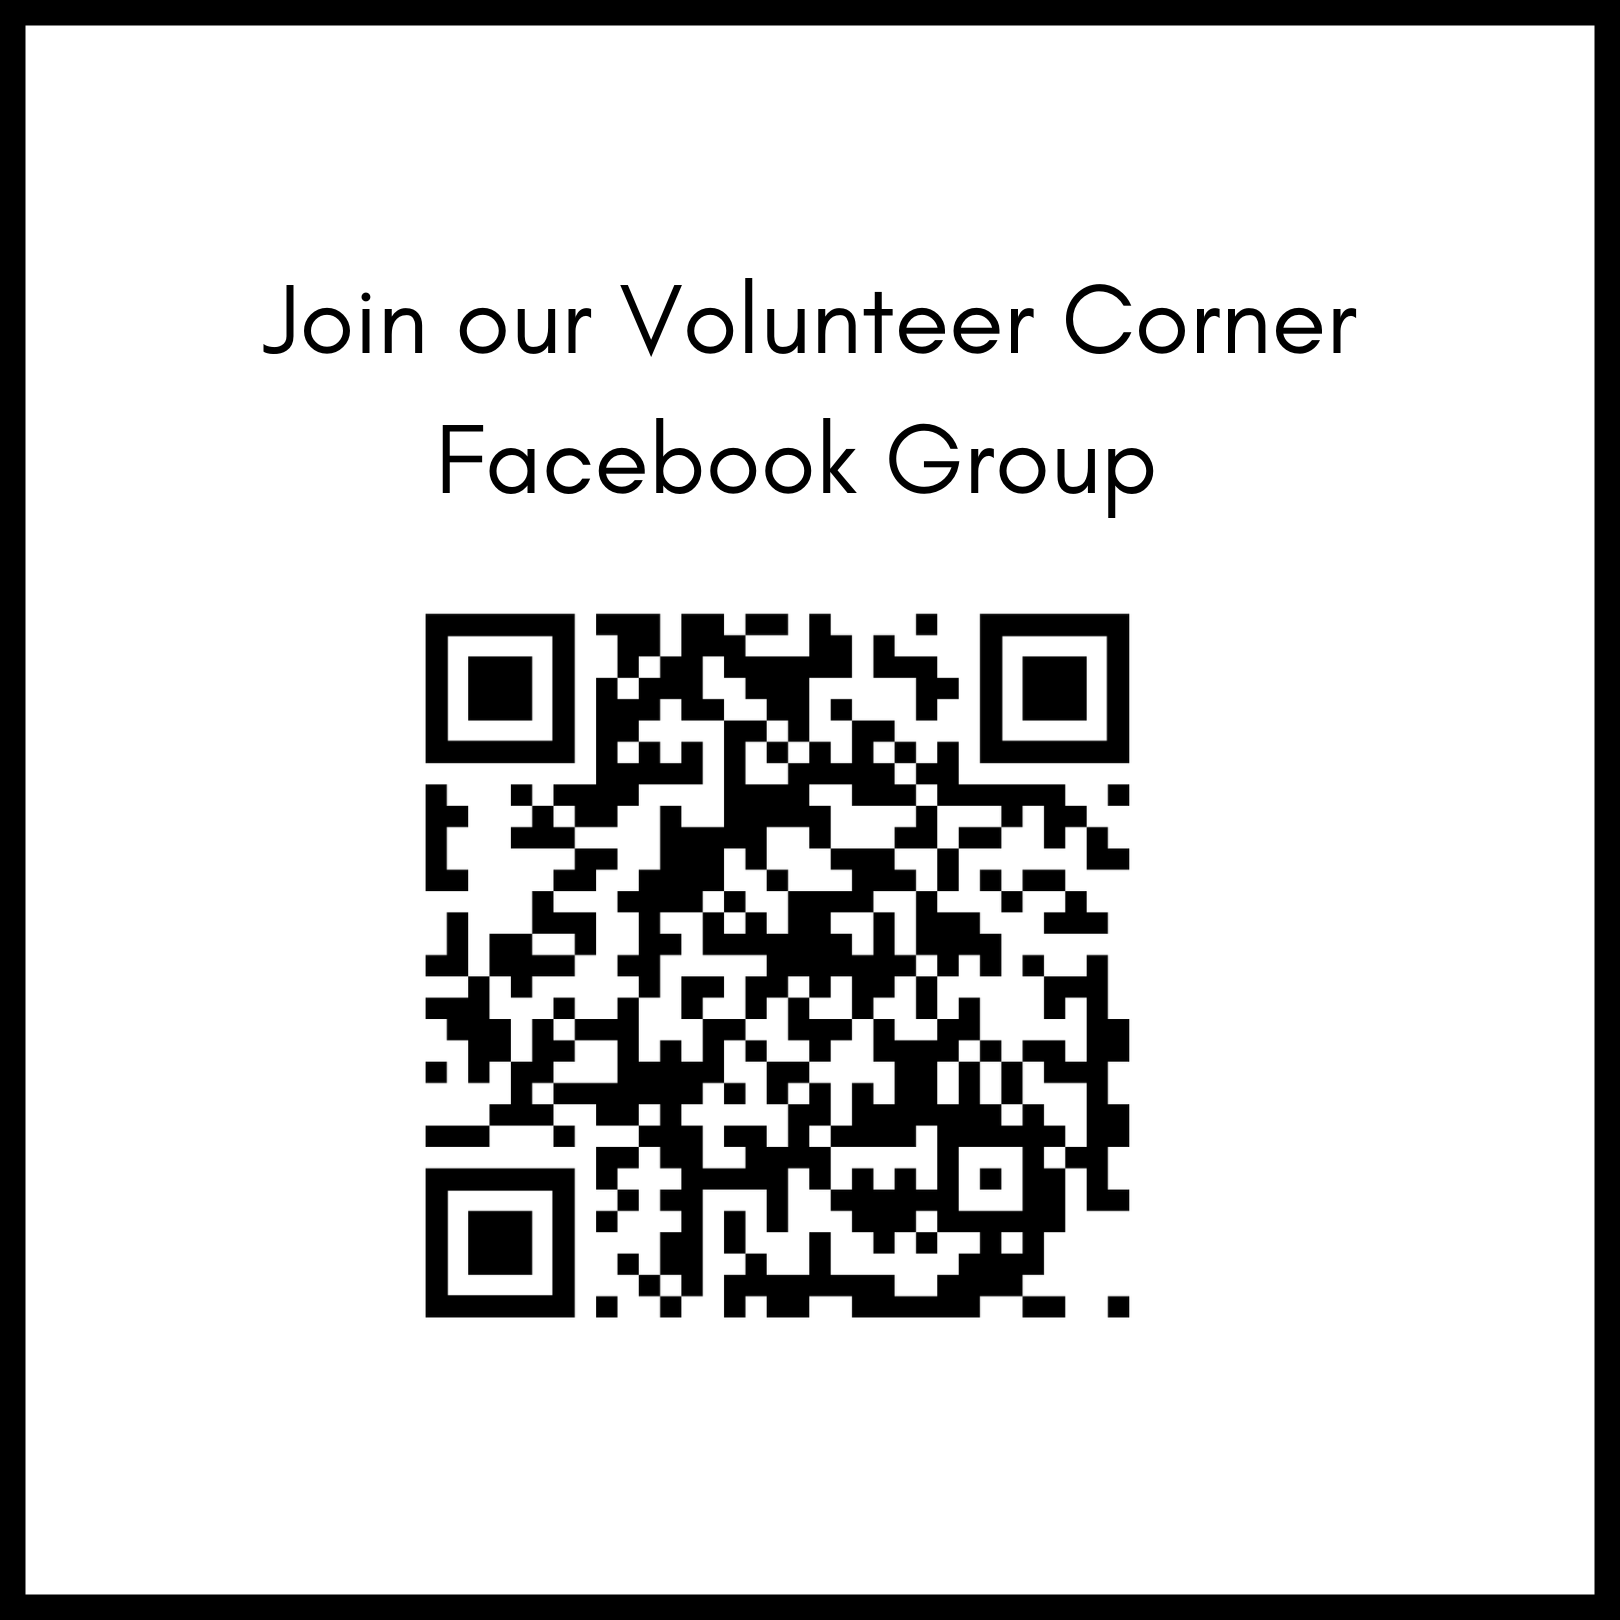 Únase a nuestro grupo de Facebook de voluntarios